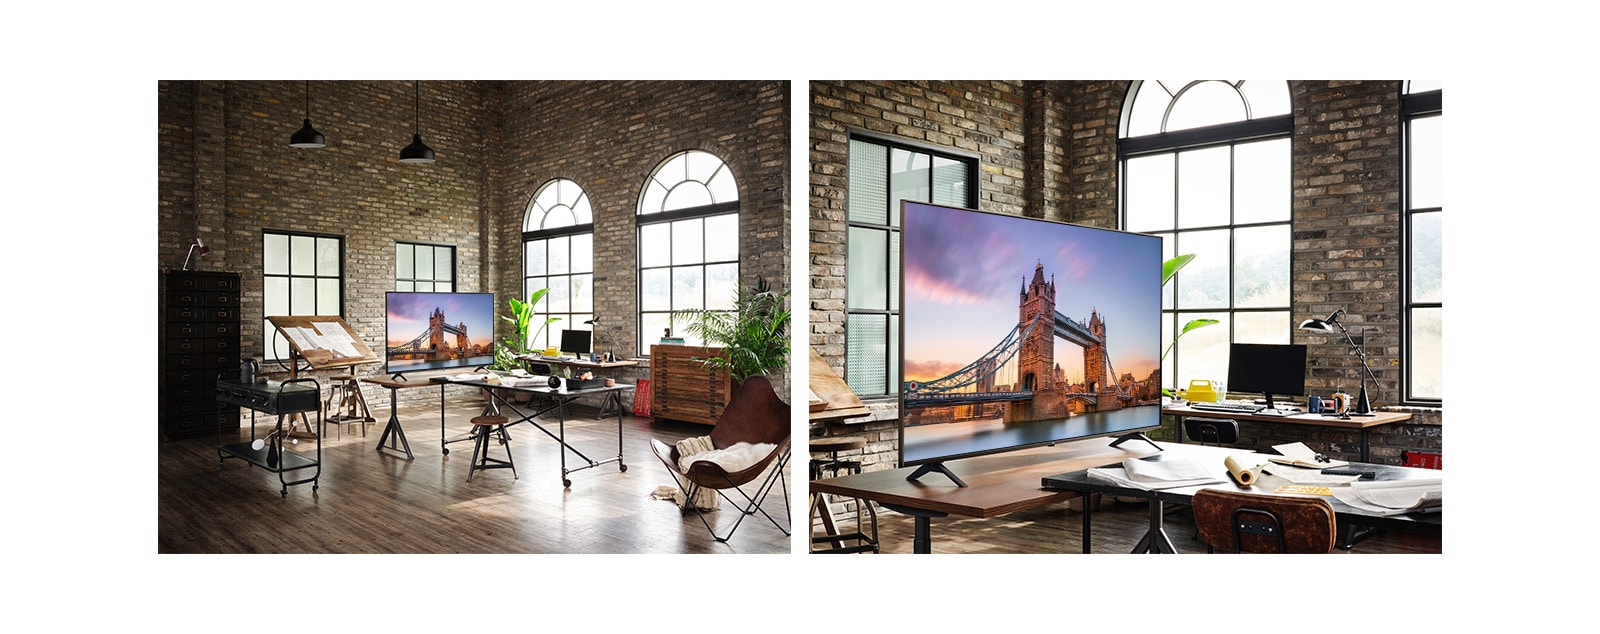 يوجد تلفزيون يعرض صورة لجسر لندن في غرفة عمل قديمة.  توجد لقطة مقرّبة لجهاز تلفزيون يعرض صورة جسر لندن على طاولة في غرفة عمل عتيقة.